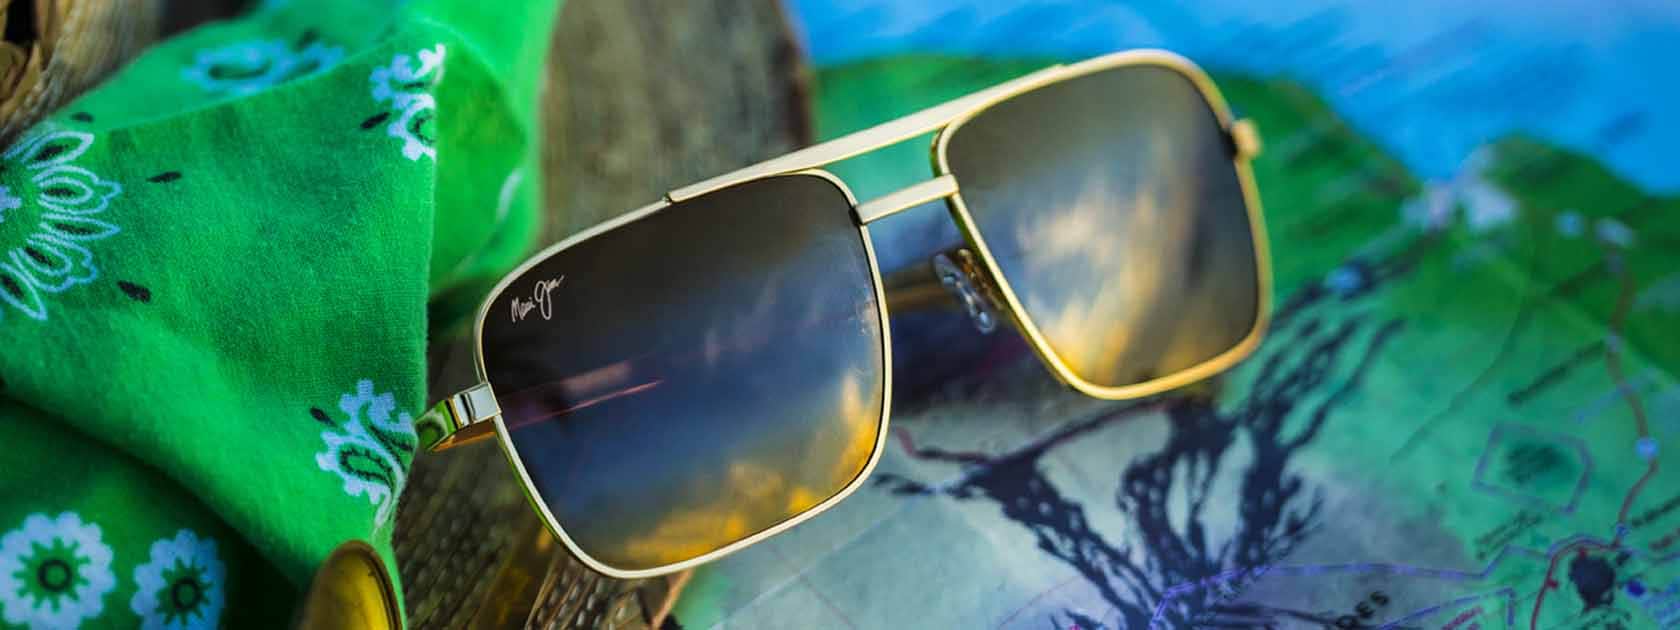 Prescription Sunglasses - Customized Clarity